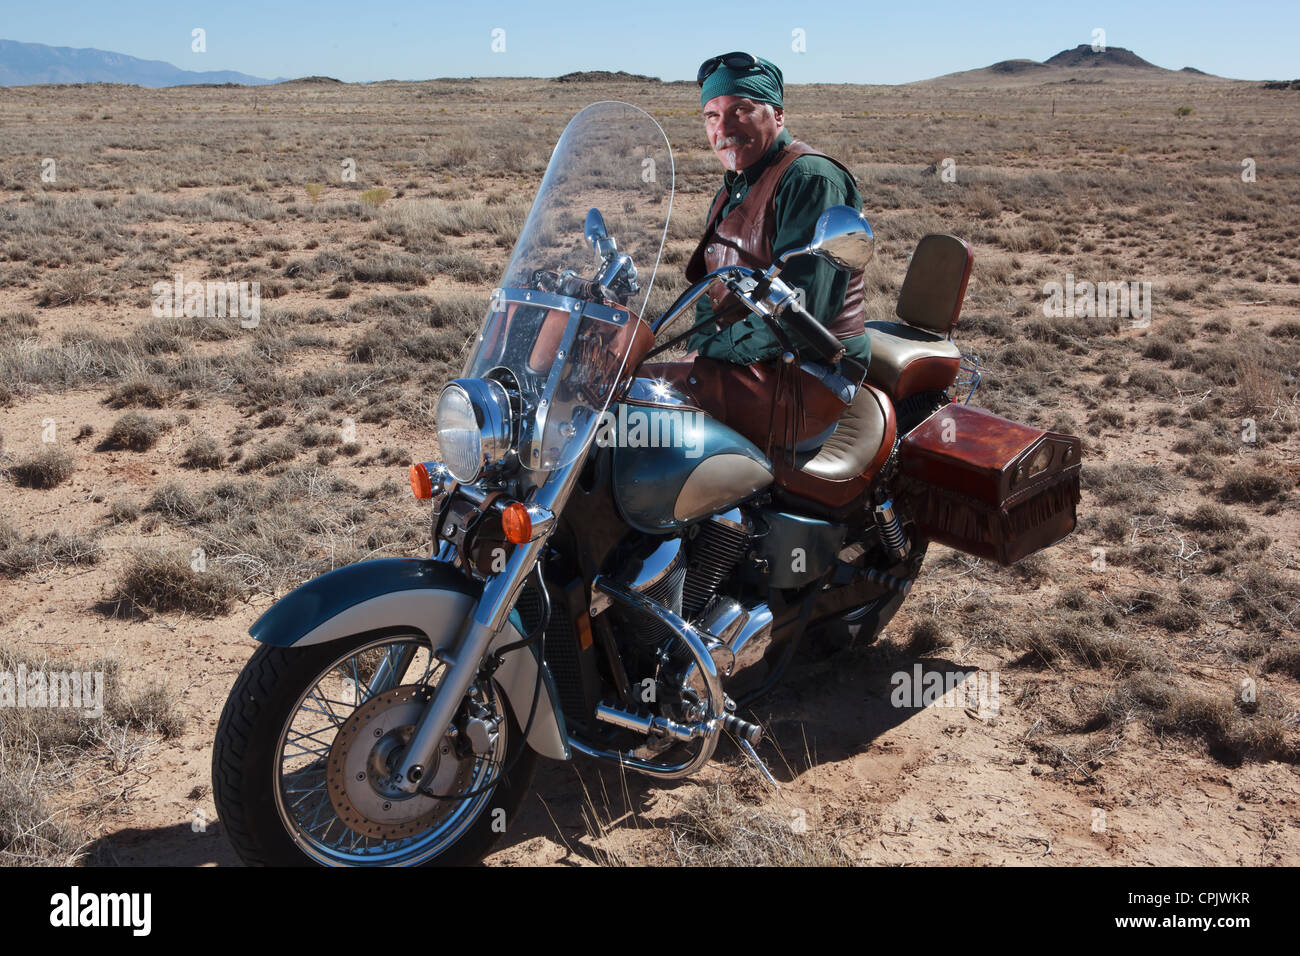 Ältere kaukasischen Mann tragen braune Leder lehnt sich gegen sein Motorrad  in der Wüste außerhalb von Albuquerque, New Mexico Stockfotografie - Alamy